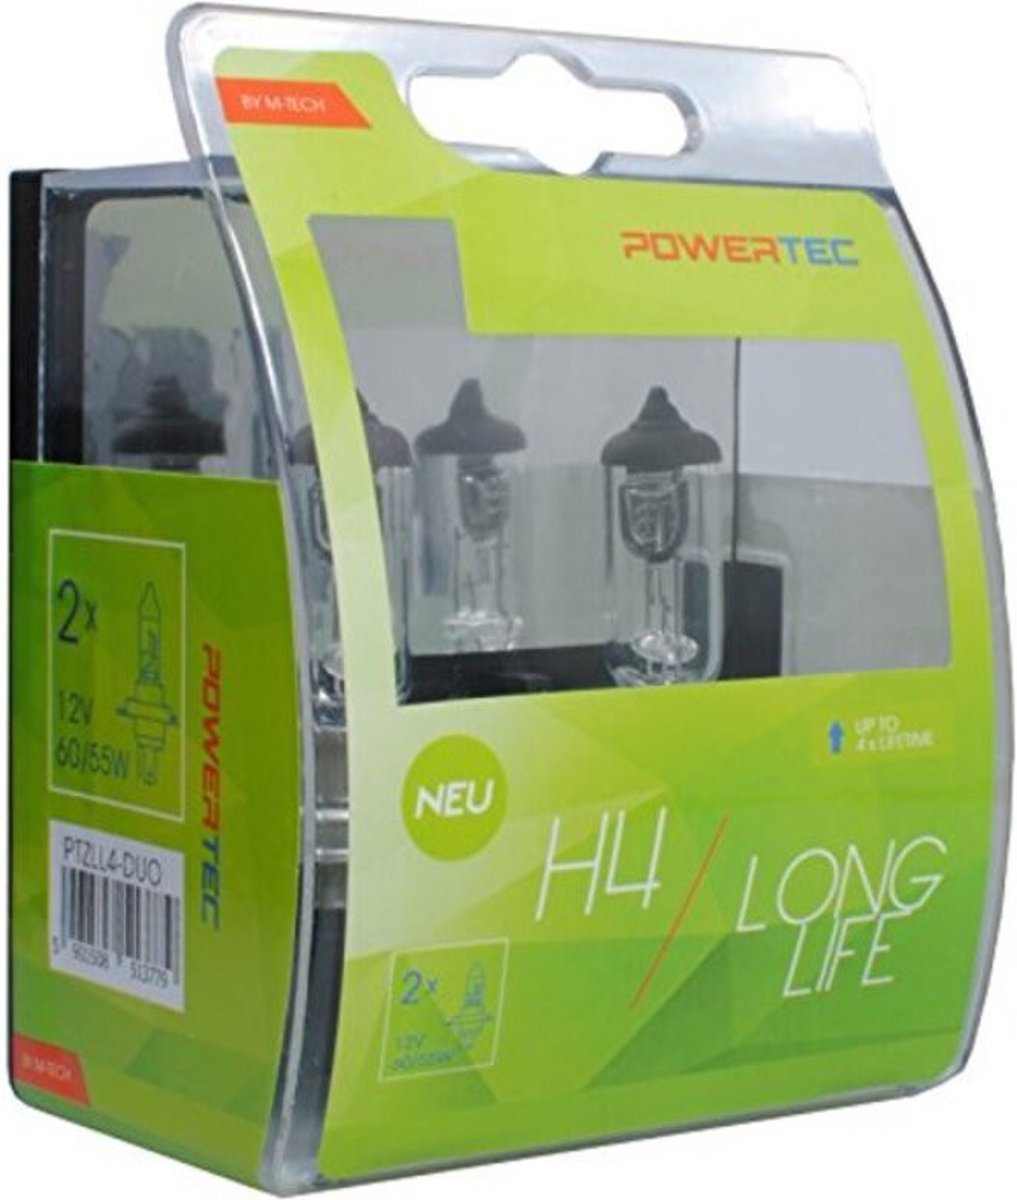 Powertec Long Life H4 12V Set